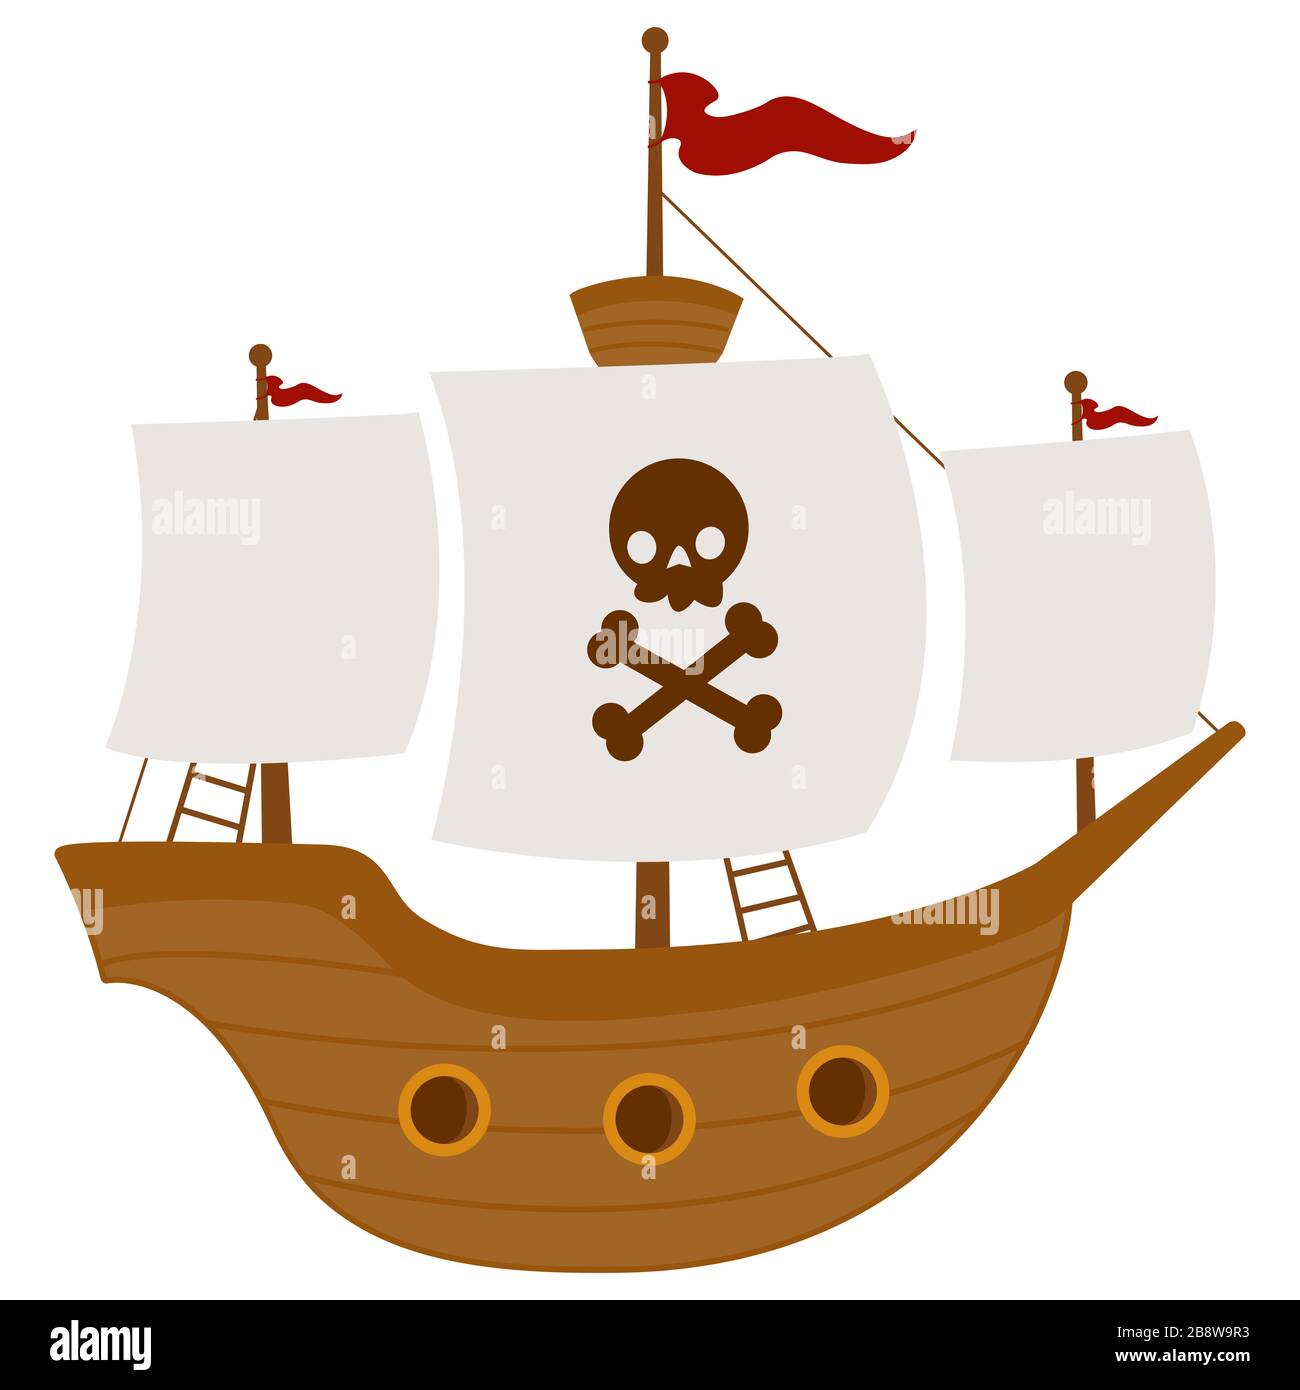 Free clip art Pirate-ship by mystica